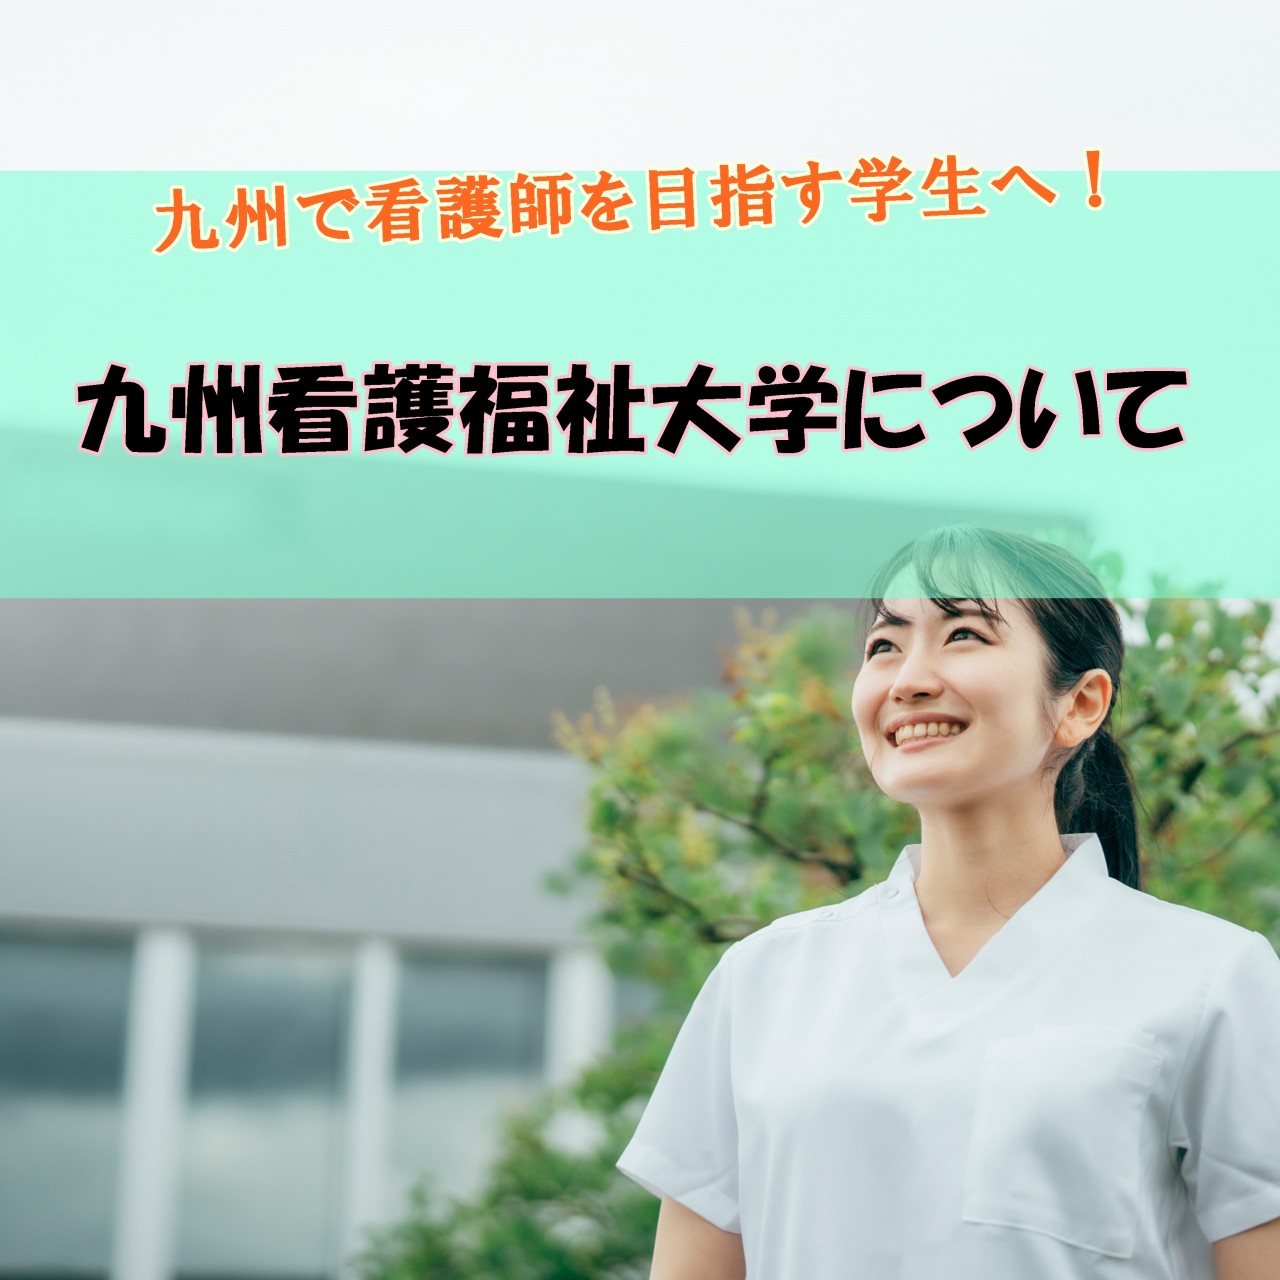 九州看護福祉大学看護学科の特徴・学費・偏差値・入試制度について